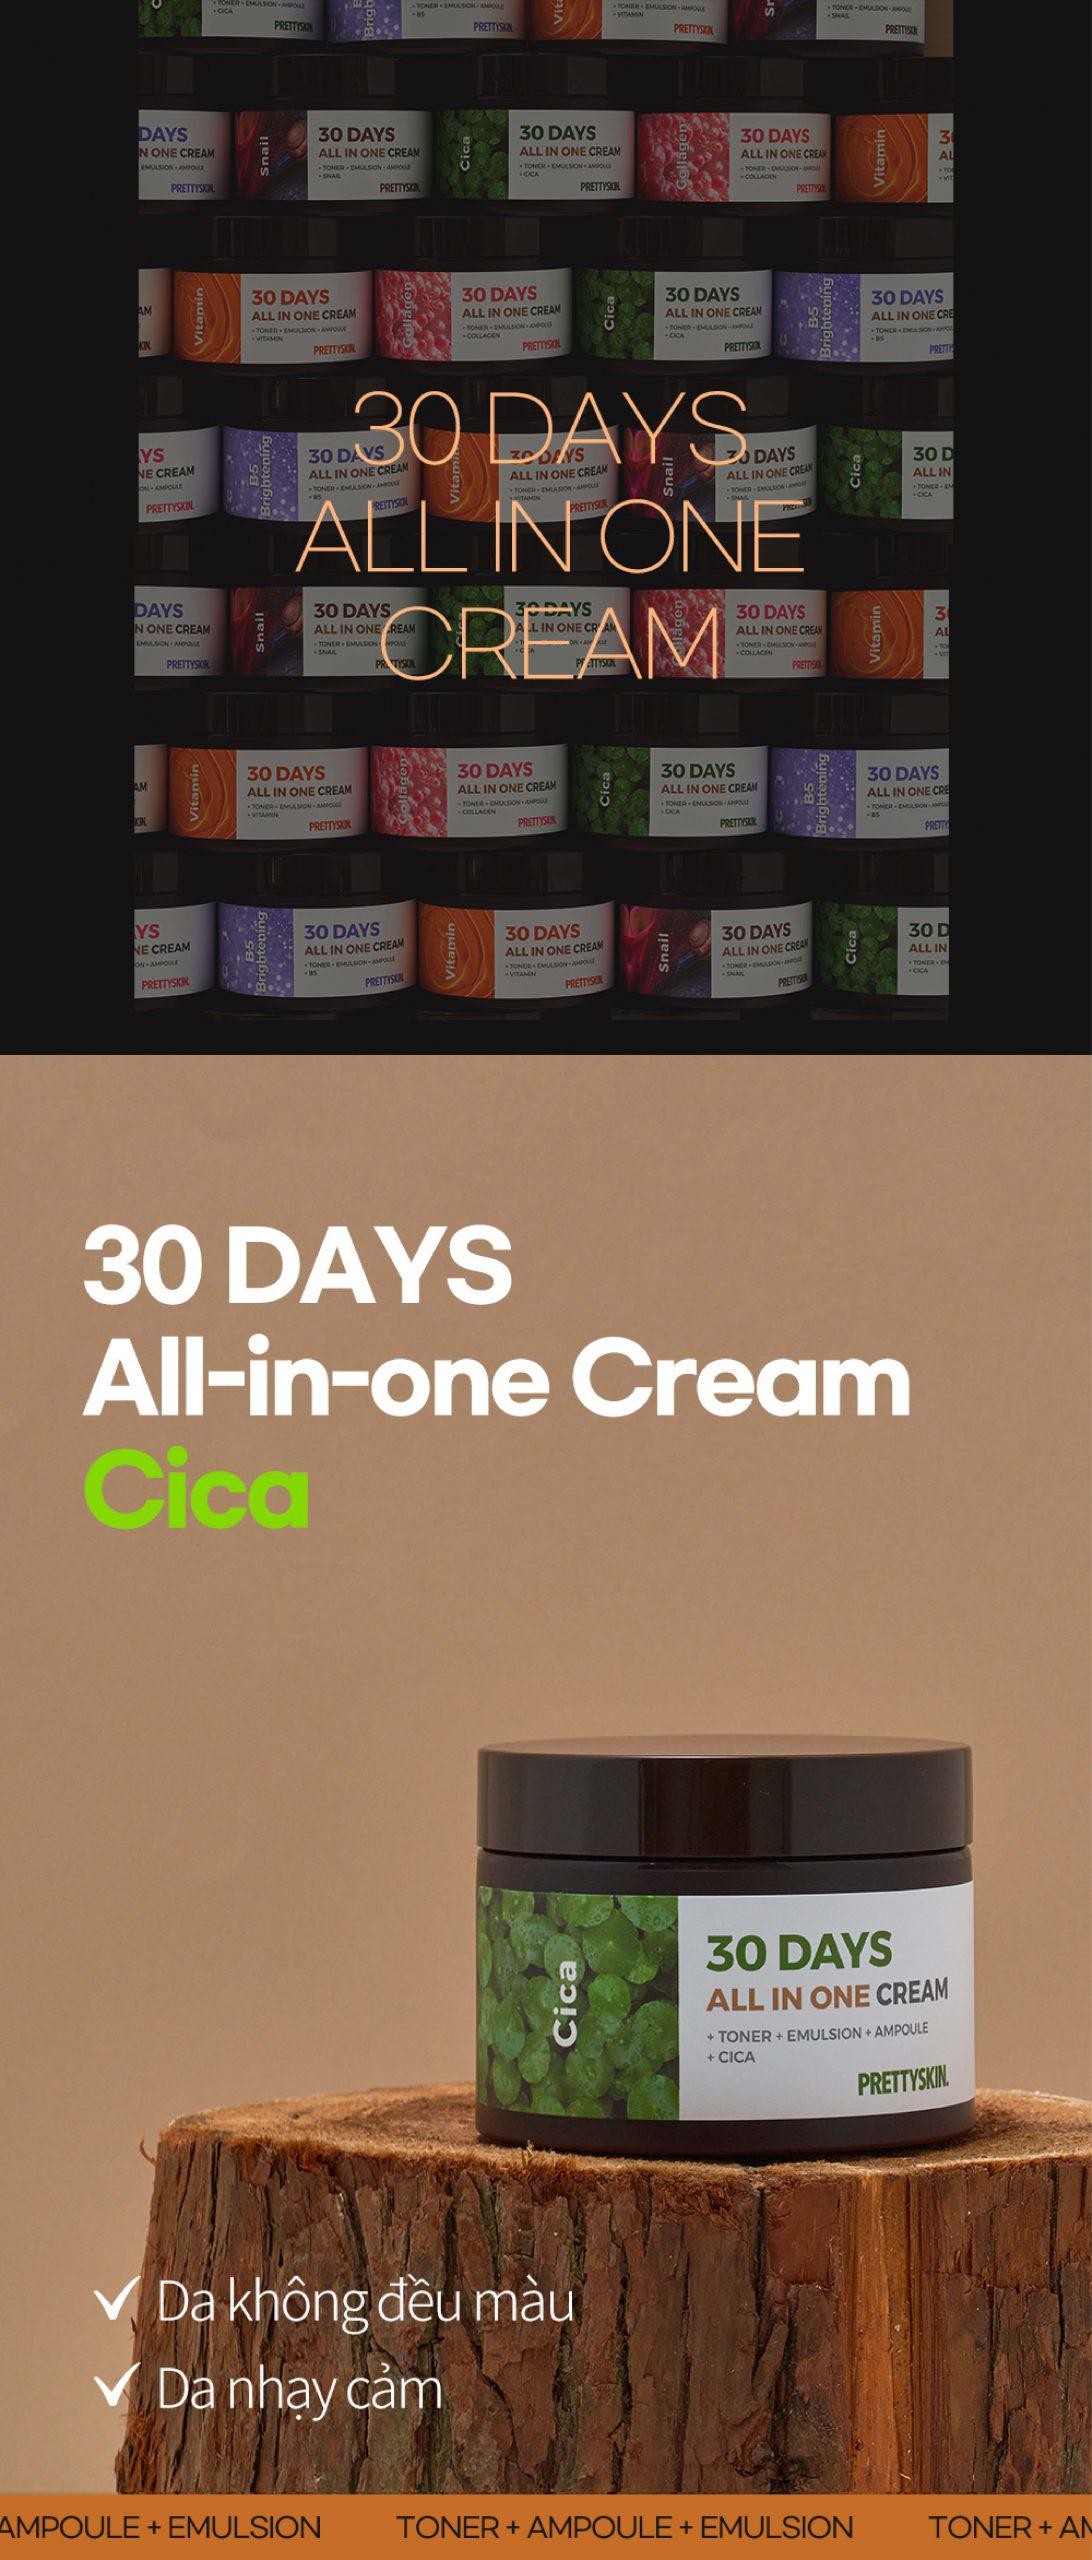 Kem dưỡng rau má Pretty Skin Cica 30 Days All In One Cream